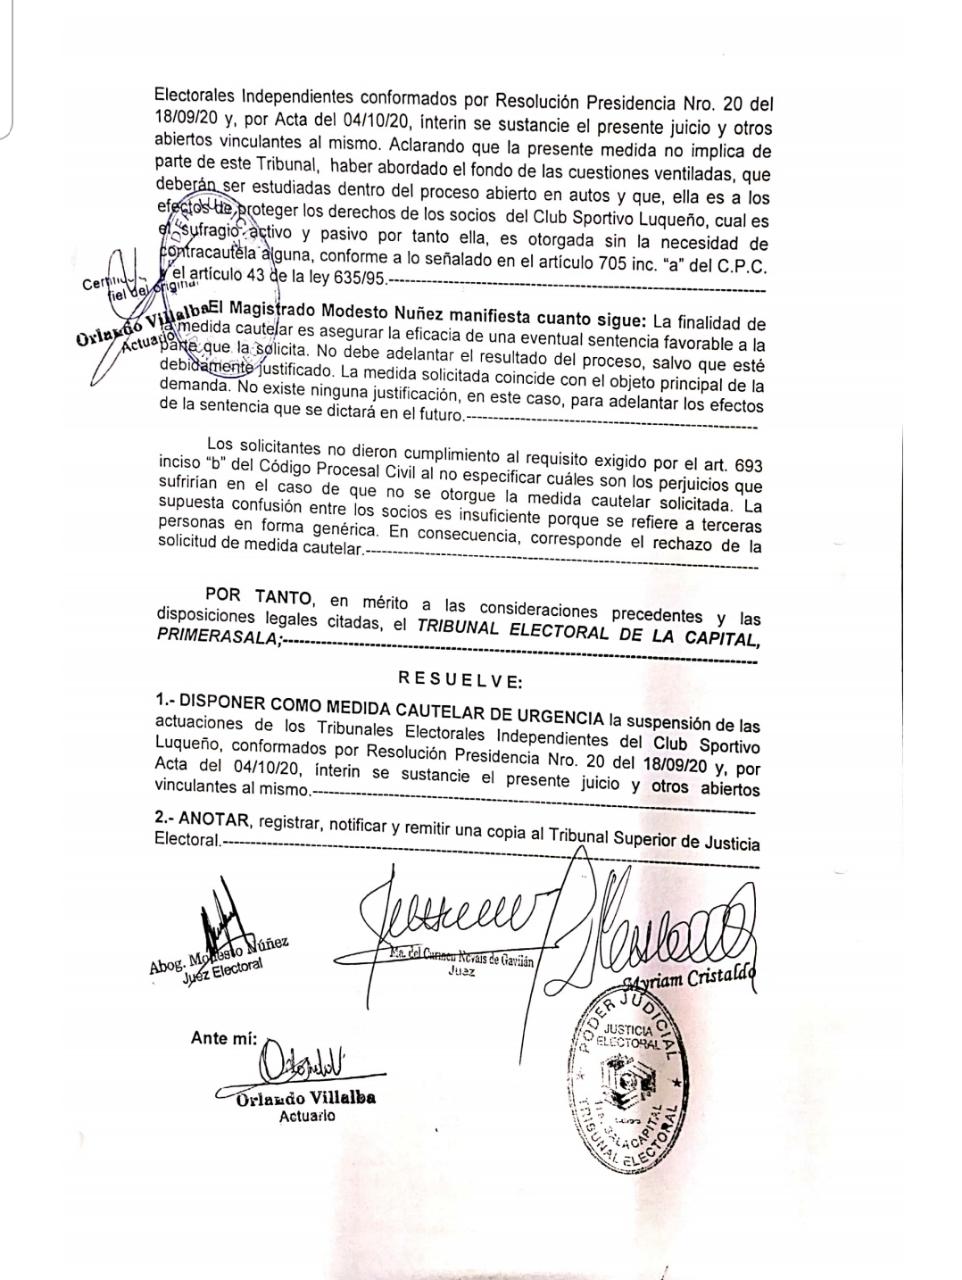 Documento de suspensión del Tribunal Superior de Justicia Electoral. Foto: Gentileza.